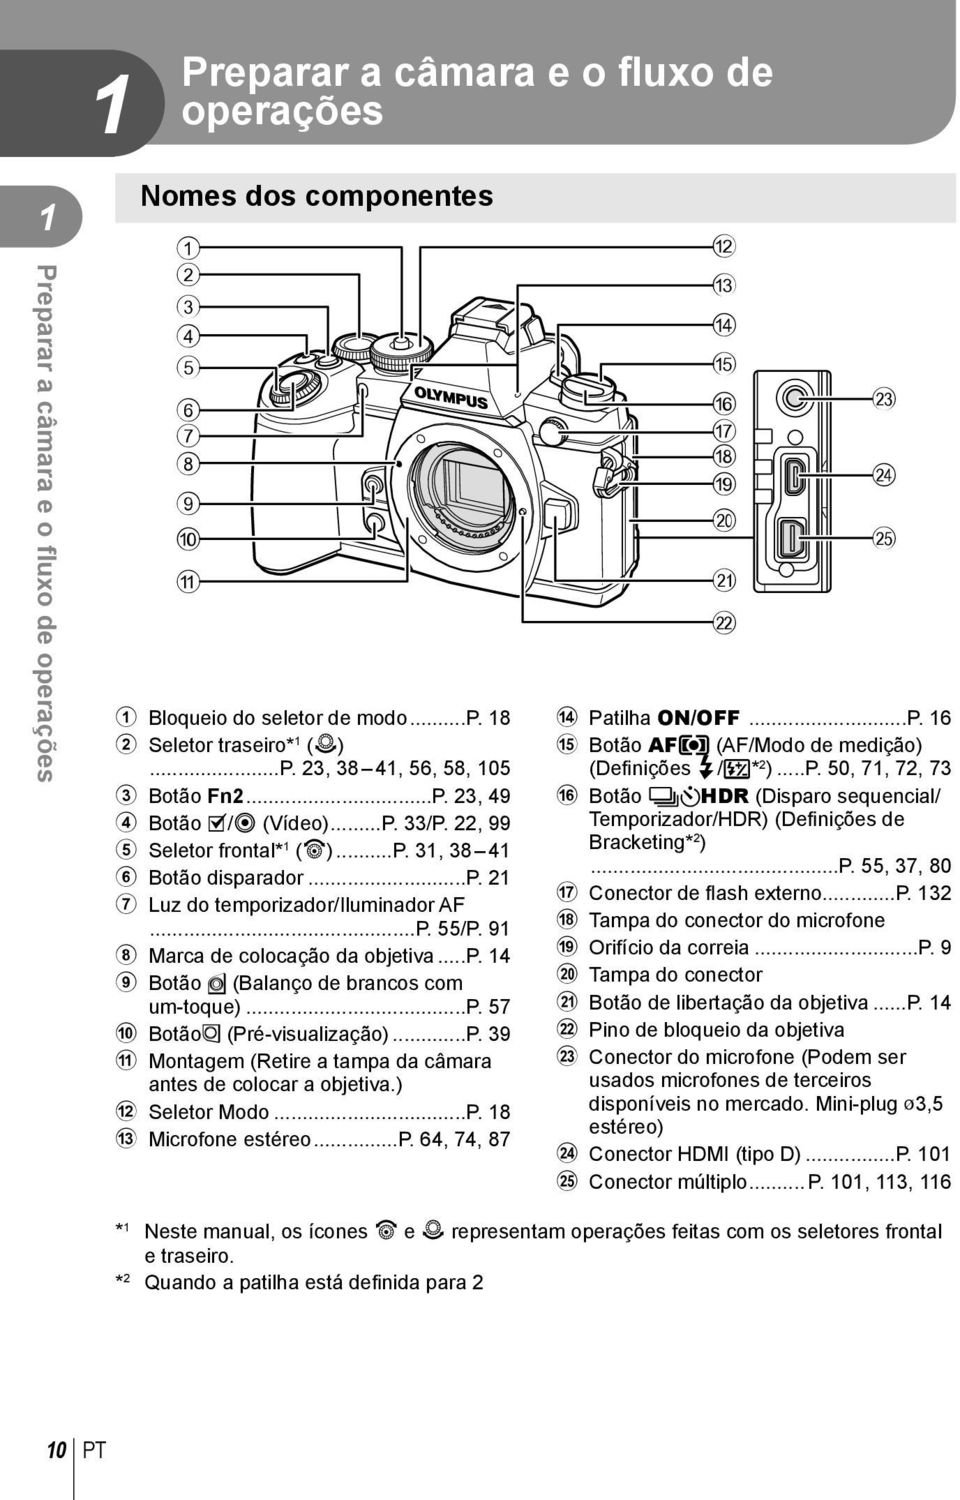 ..p. 14 9 Botão Y (Balanço de brancos com um-toque)...p. 57 0 BotãoZ (Pré-visualização)...P. 39 a Montagem (Retire a tampa da câmara antes de colocar a objetiva.) b Seletor Modo...P. 18 c Microfone estéreo.